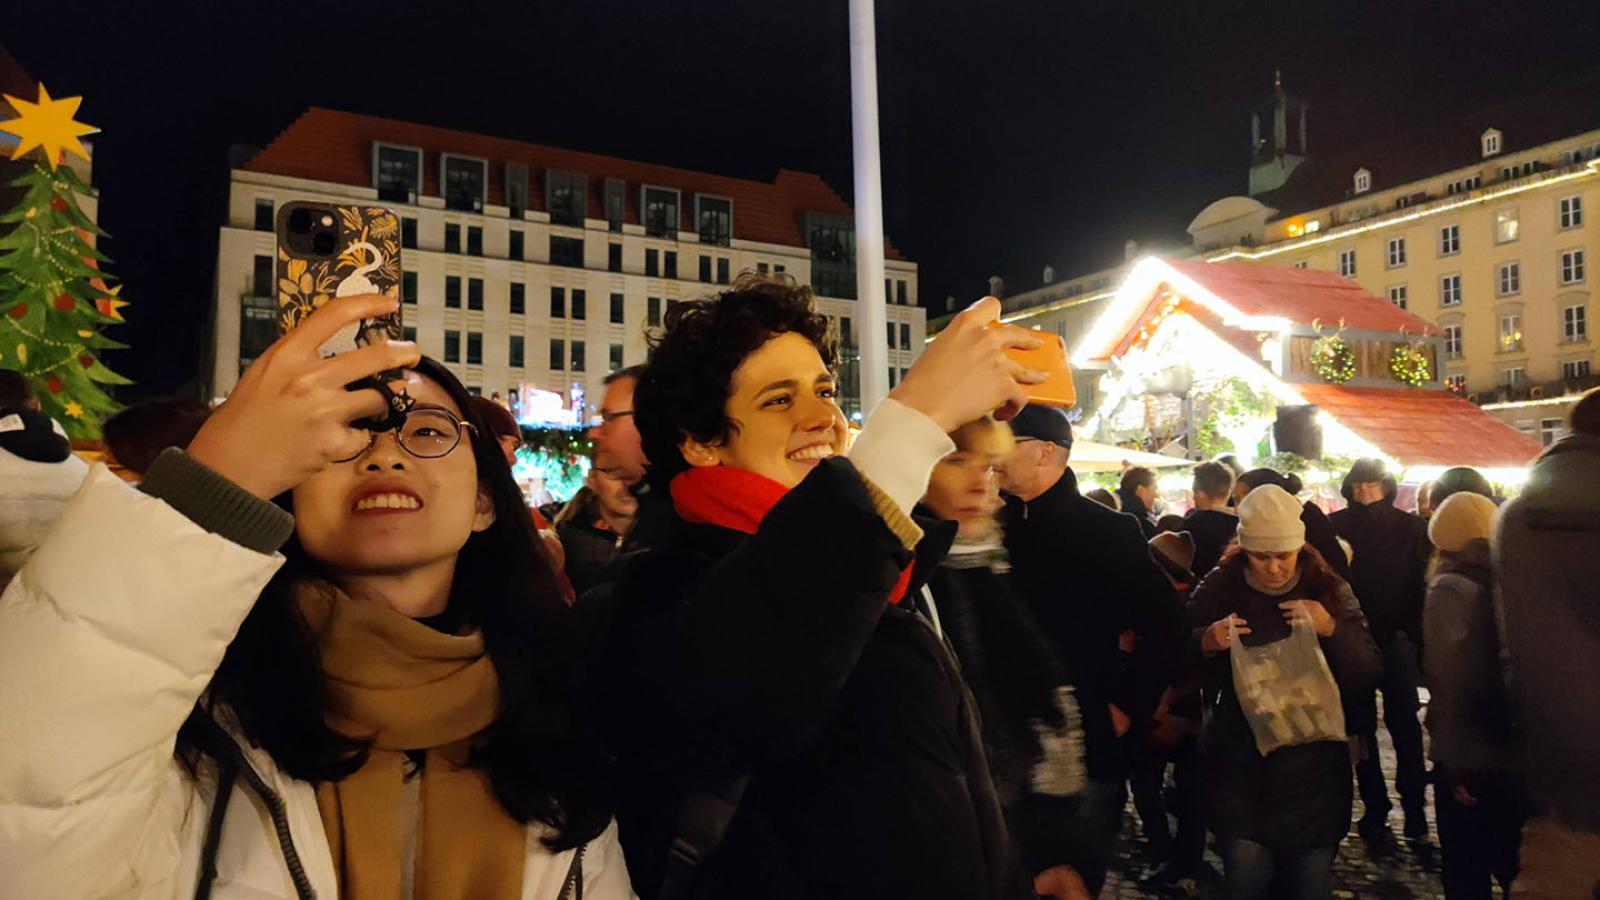 Zwei Personen stehen in der unteren linken Ecke des Bildes und halten ihre Handys in die H?he als wrden sie fotografieren. Sie stehen auf einem Weihnachtsmarkt. Der Himmel ist dunkel aber die Lichter vom Markt gl?nzen hell.